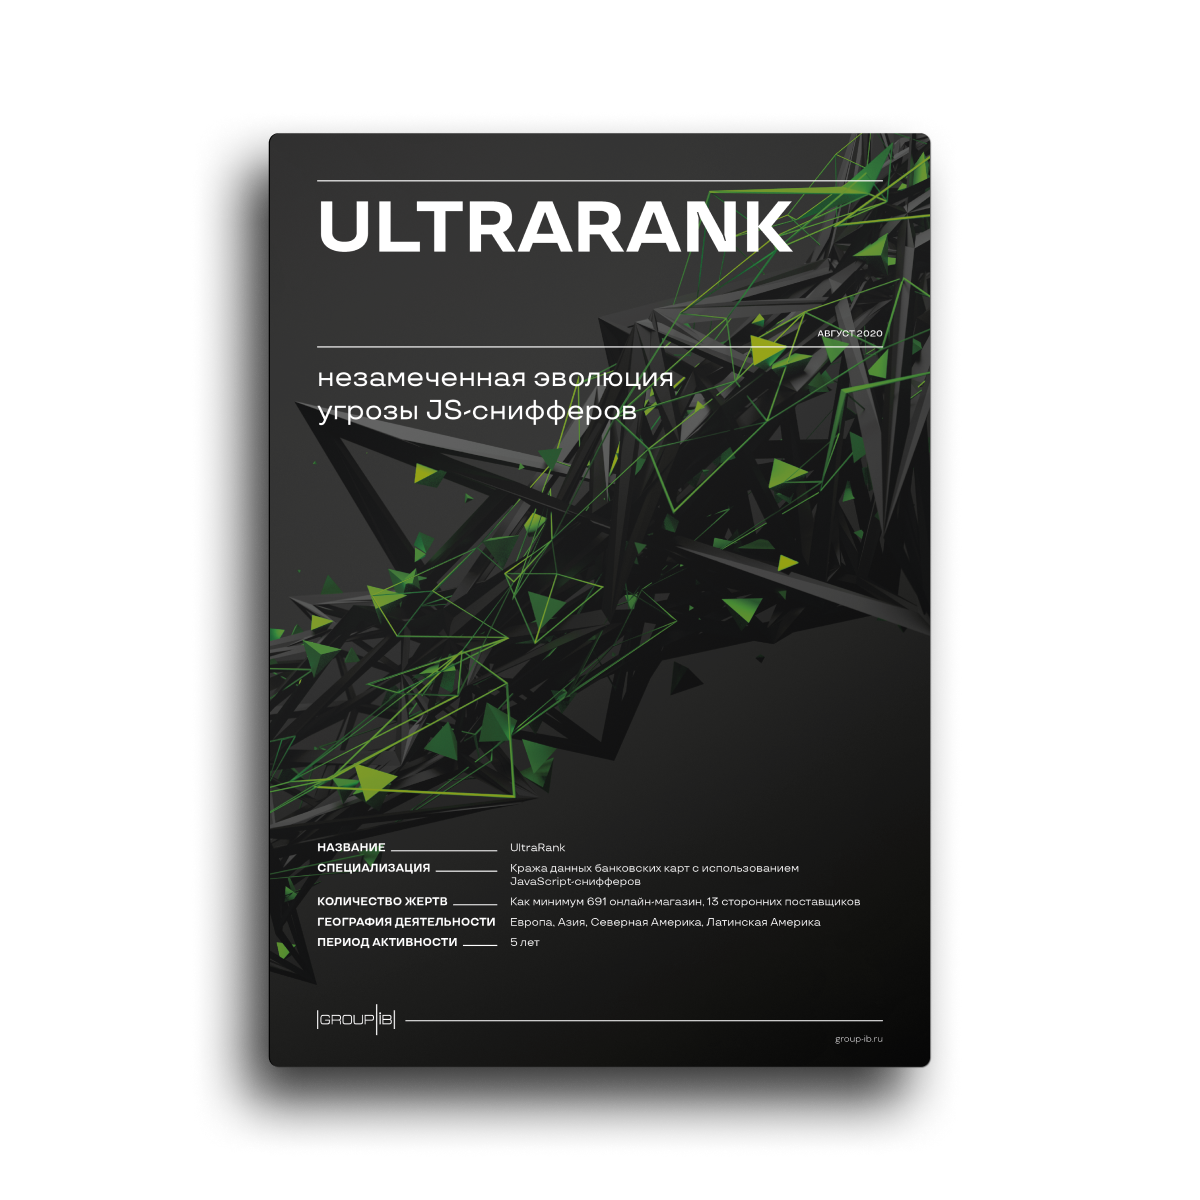 UltraRank: Незамеченная эволюция угрозы JS-снифферов